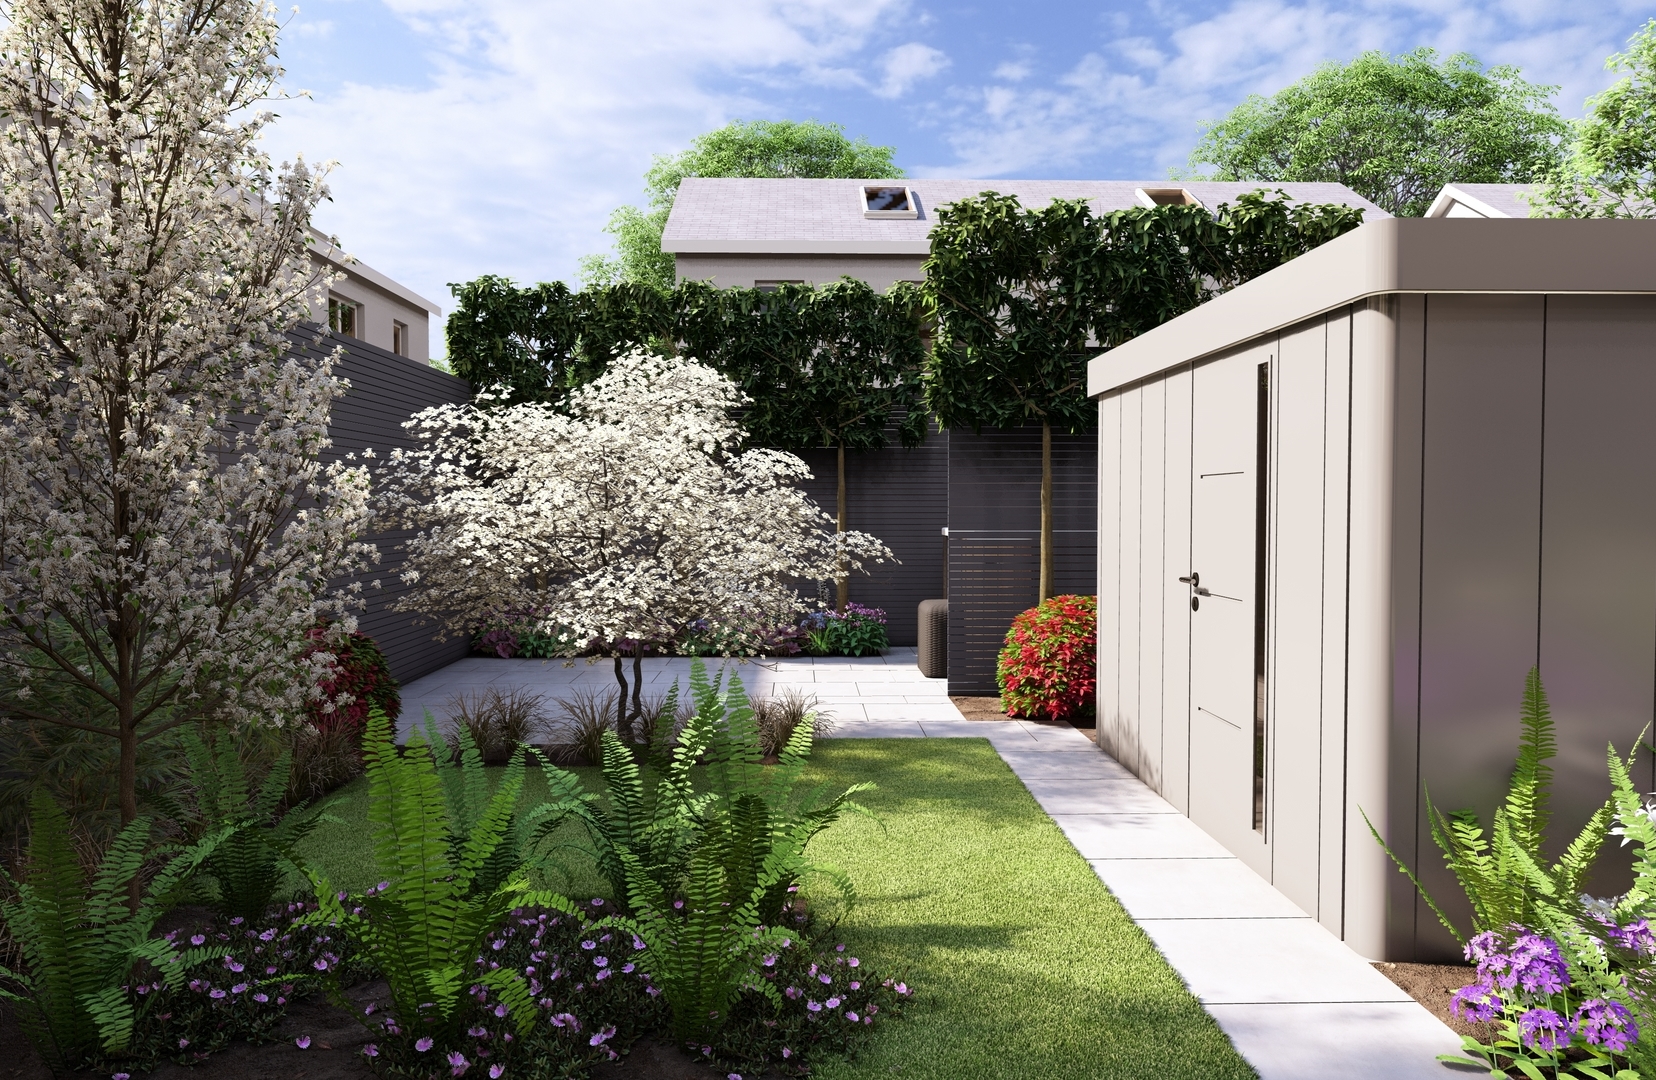 Garden Design Portmarnock, Dublin 13 with the emphasis on a colourful, versatile & private outdoor space  |  Owen Chubb Garden Design, Tel 087-2306 128